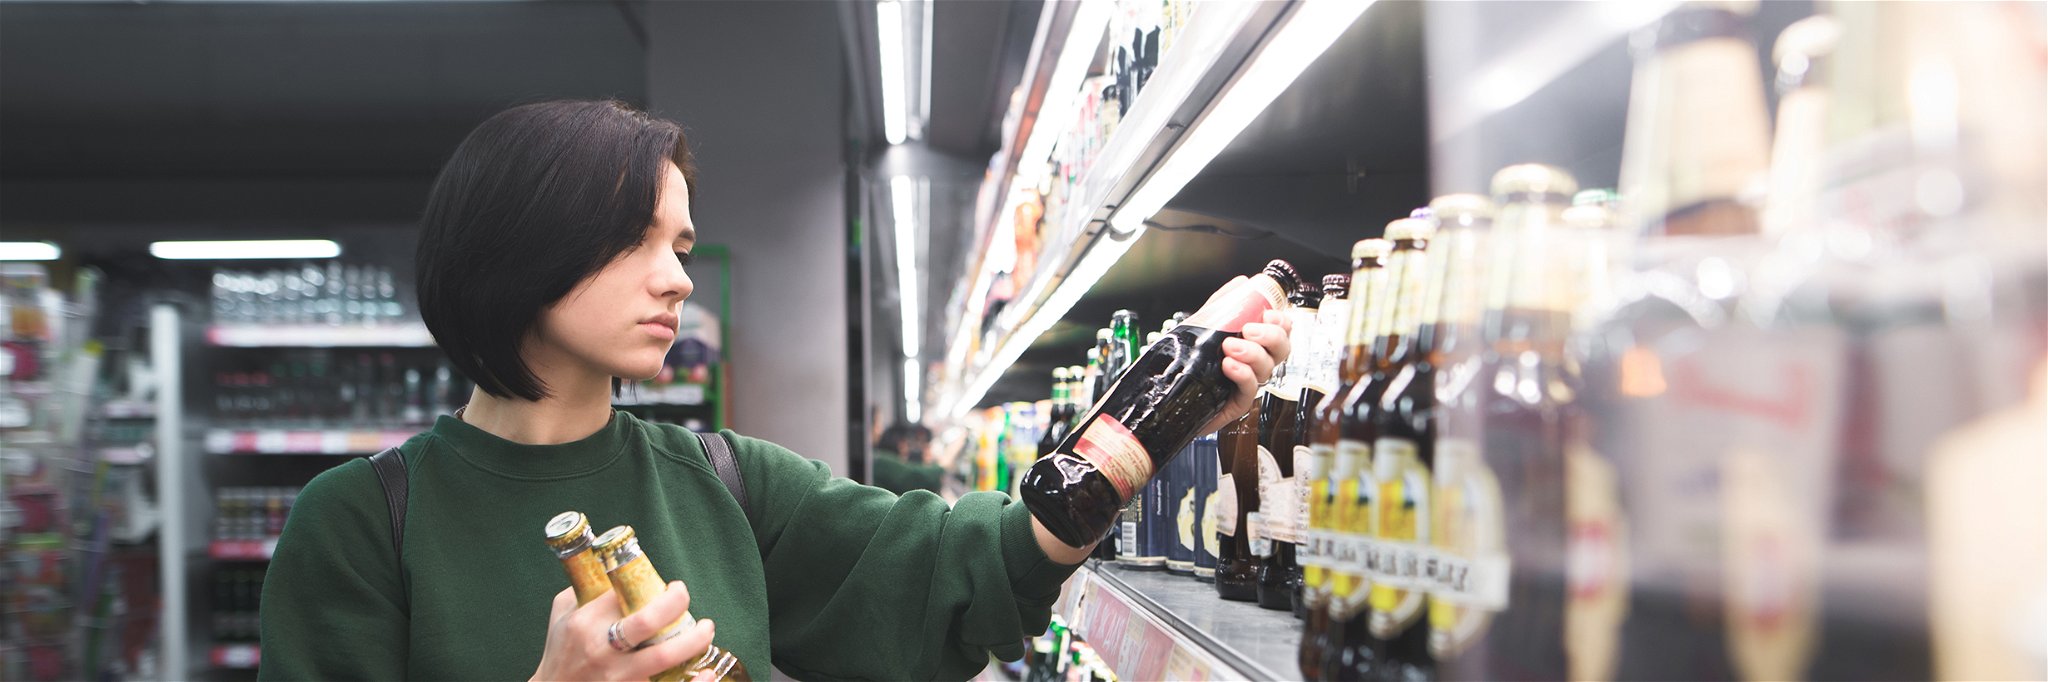 Wird der Alkoholkauf im Supermarkt bald teurer?